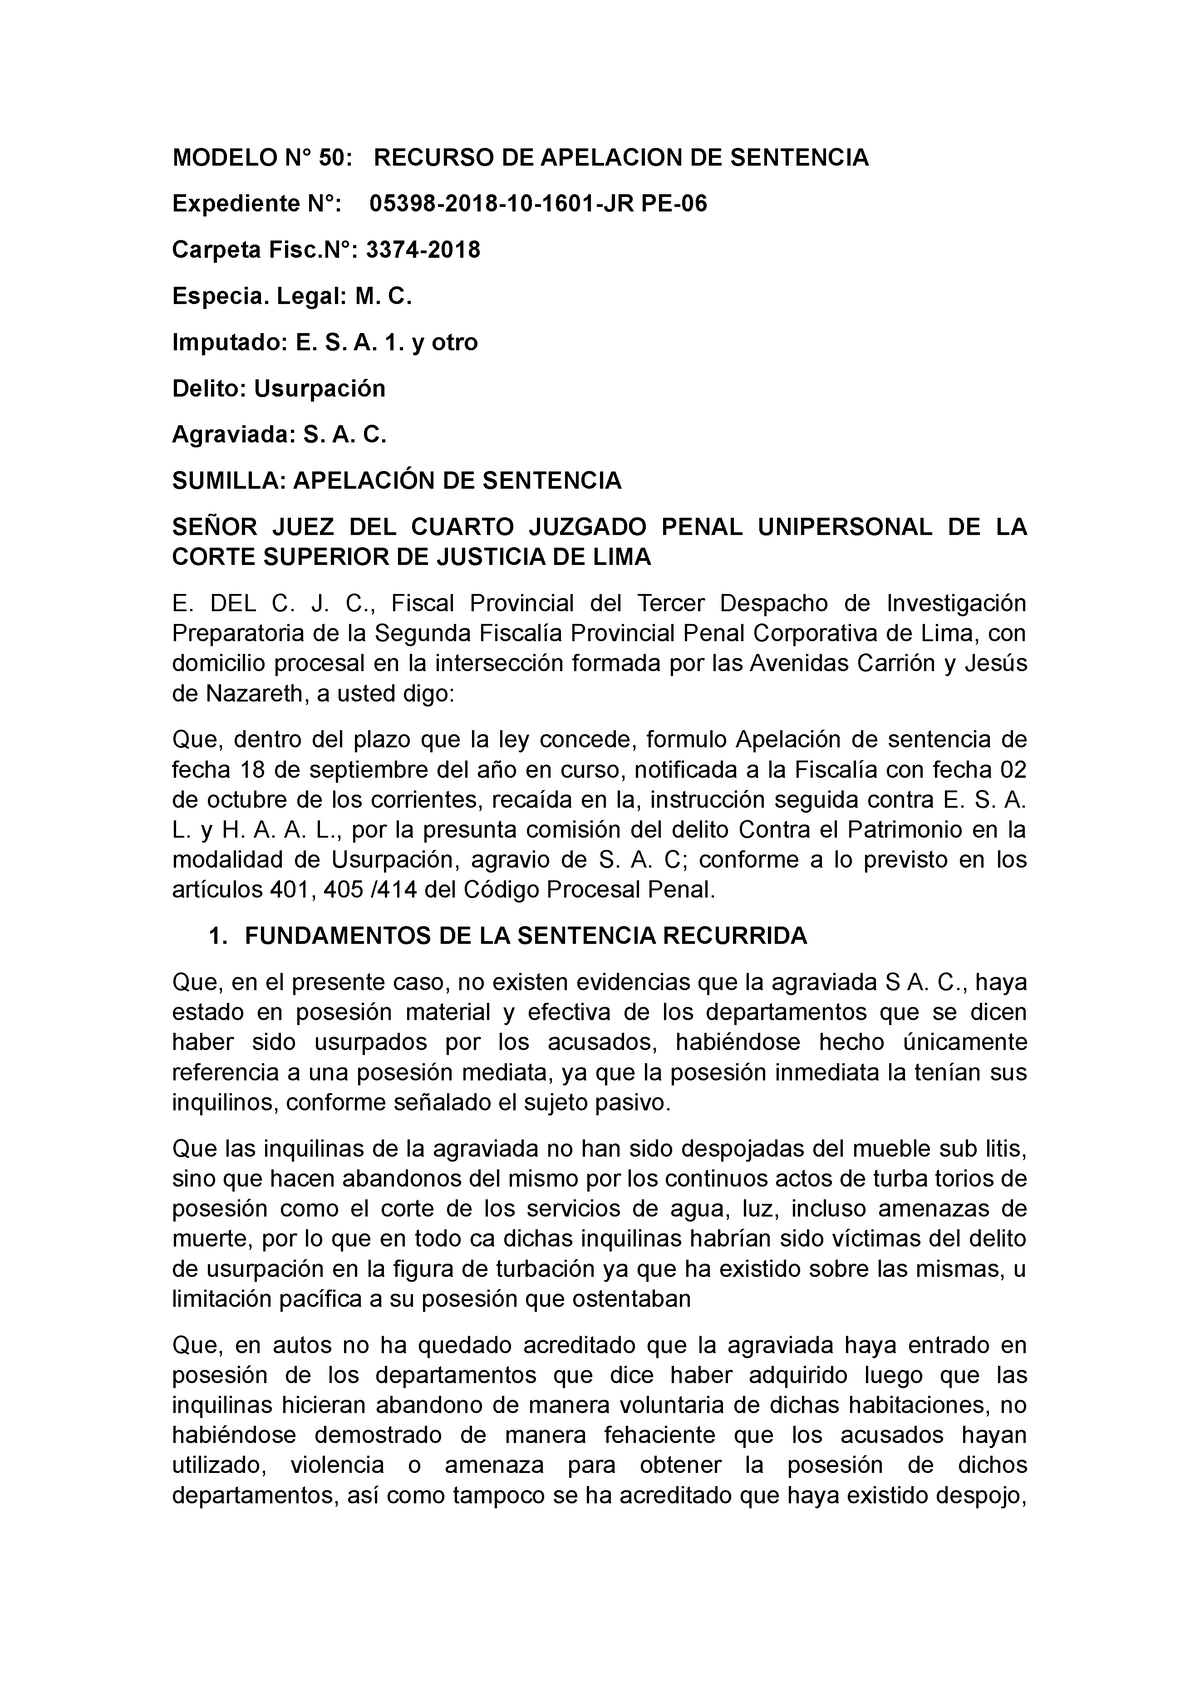  Modelo Recurso DE Apelacion DE Sentencia - MODELO N° 50: RECURSO DE  APELACION DE SENTENCIA - Studocu